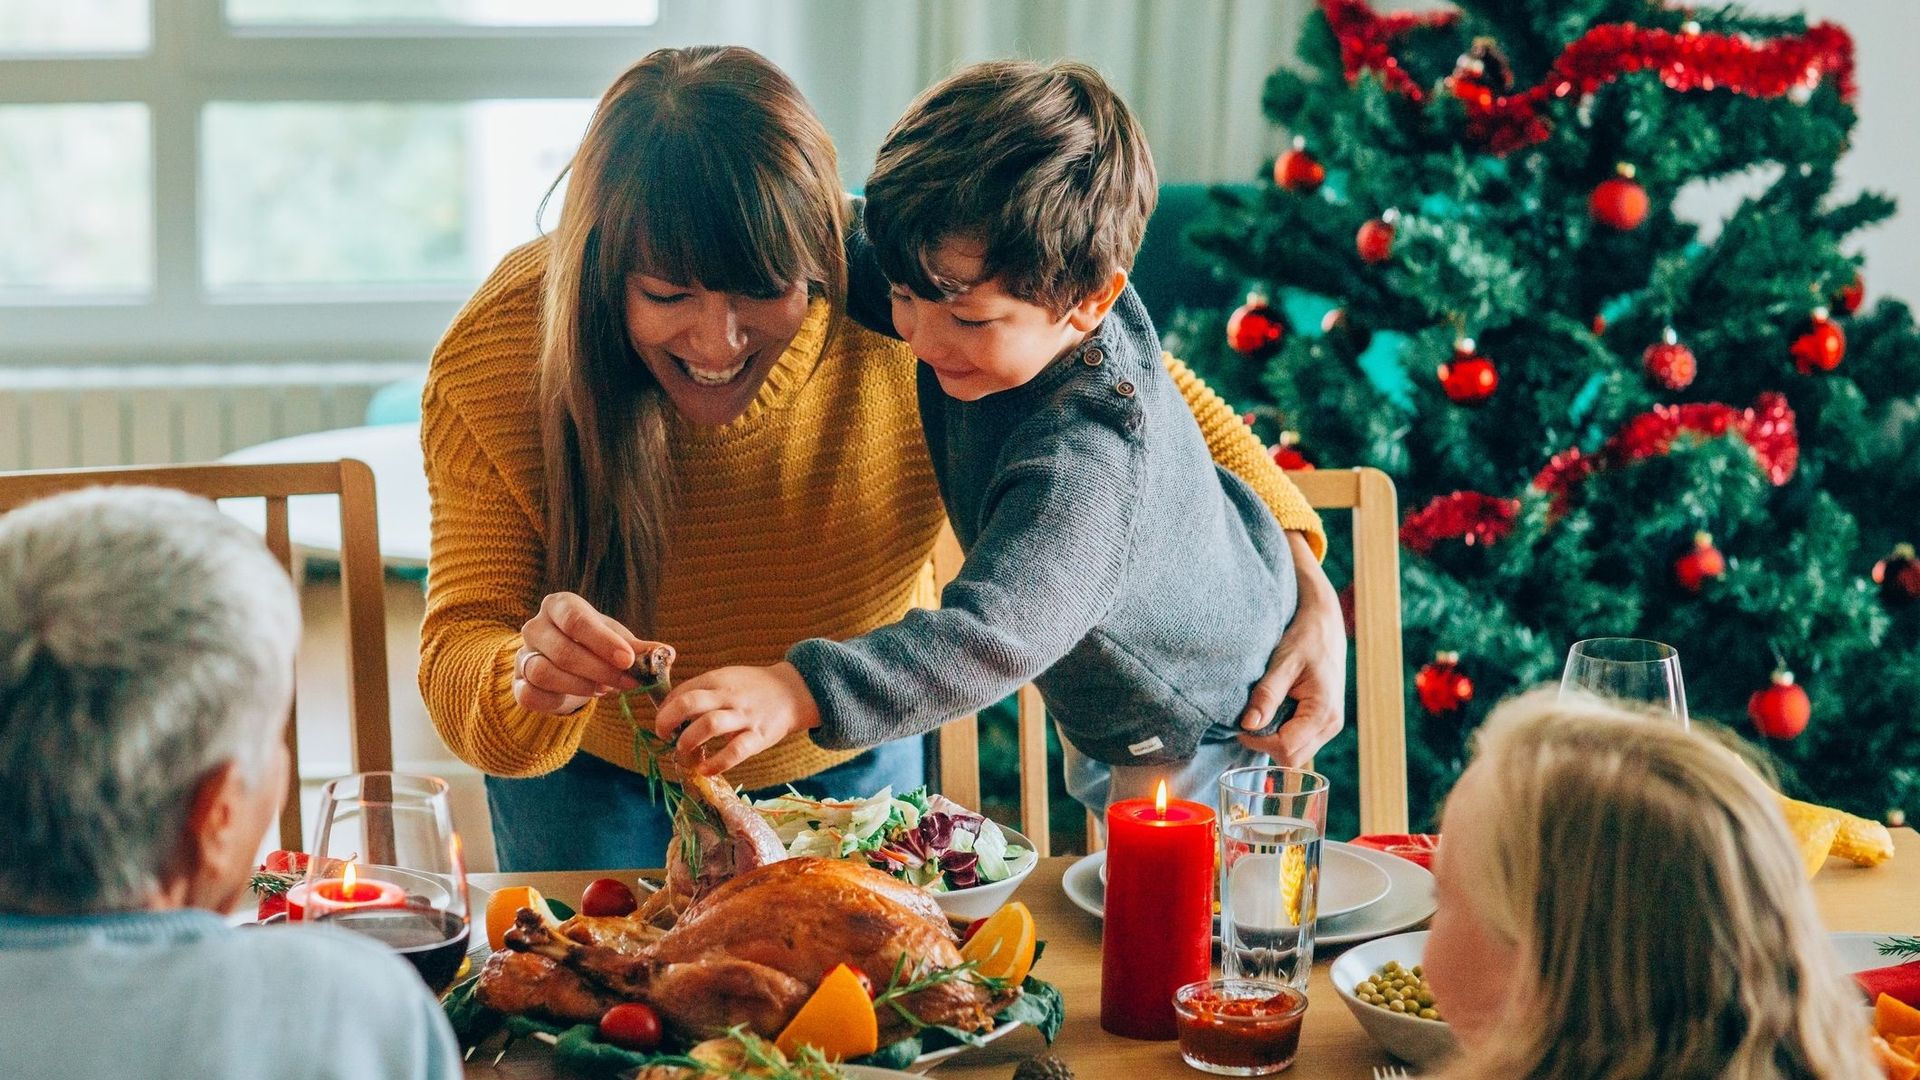 Près d'un Britannique sur deux incapable de préparer un repas de Noël, selon un sondage.